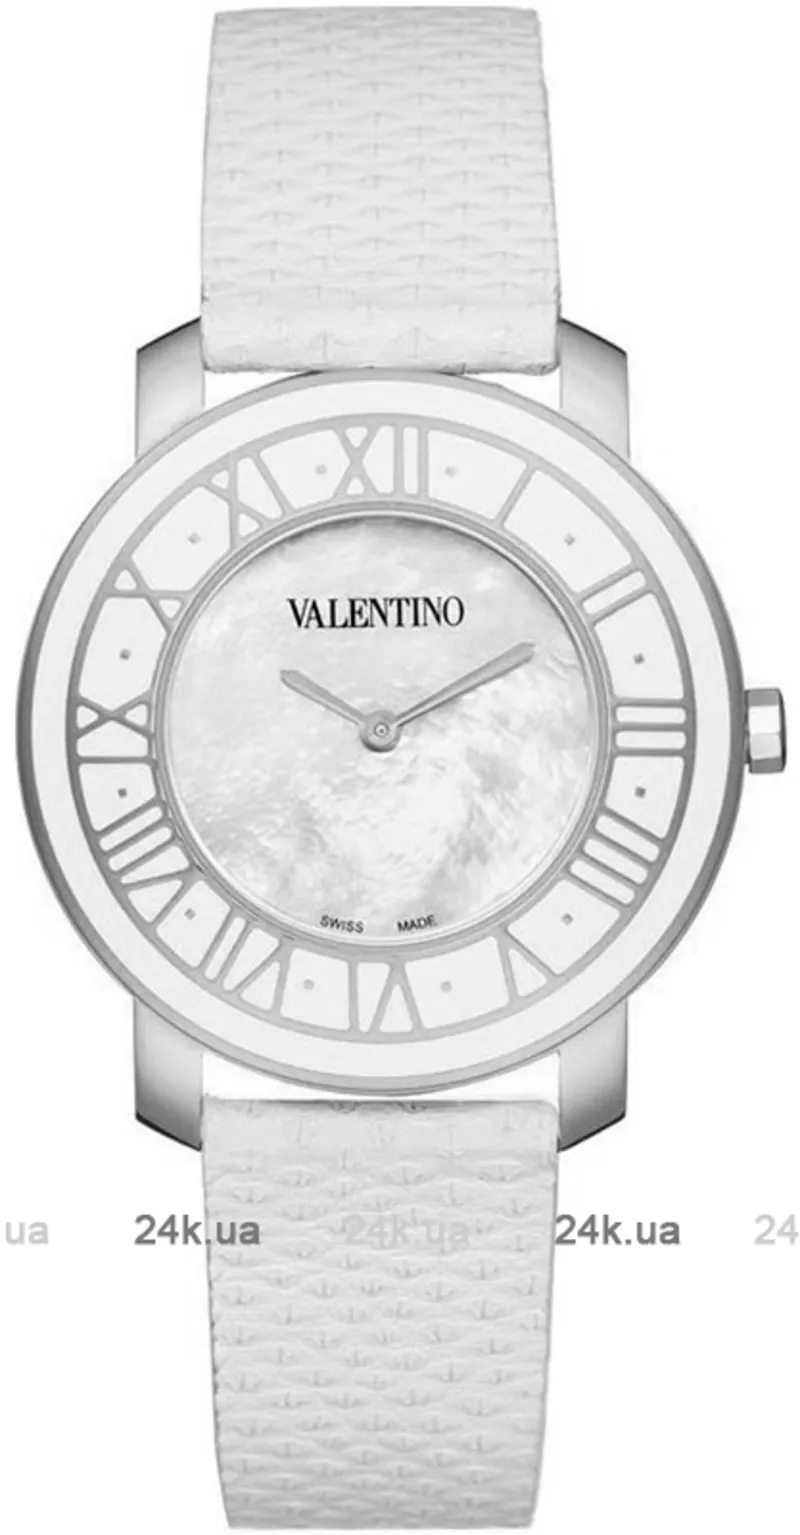 Часы Valentino VL46MBQ9991 S001